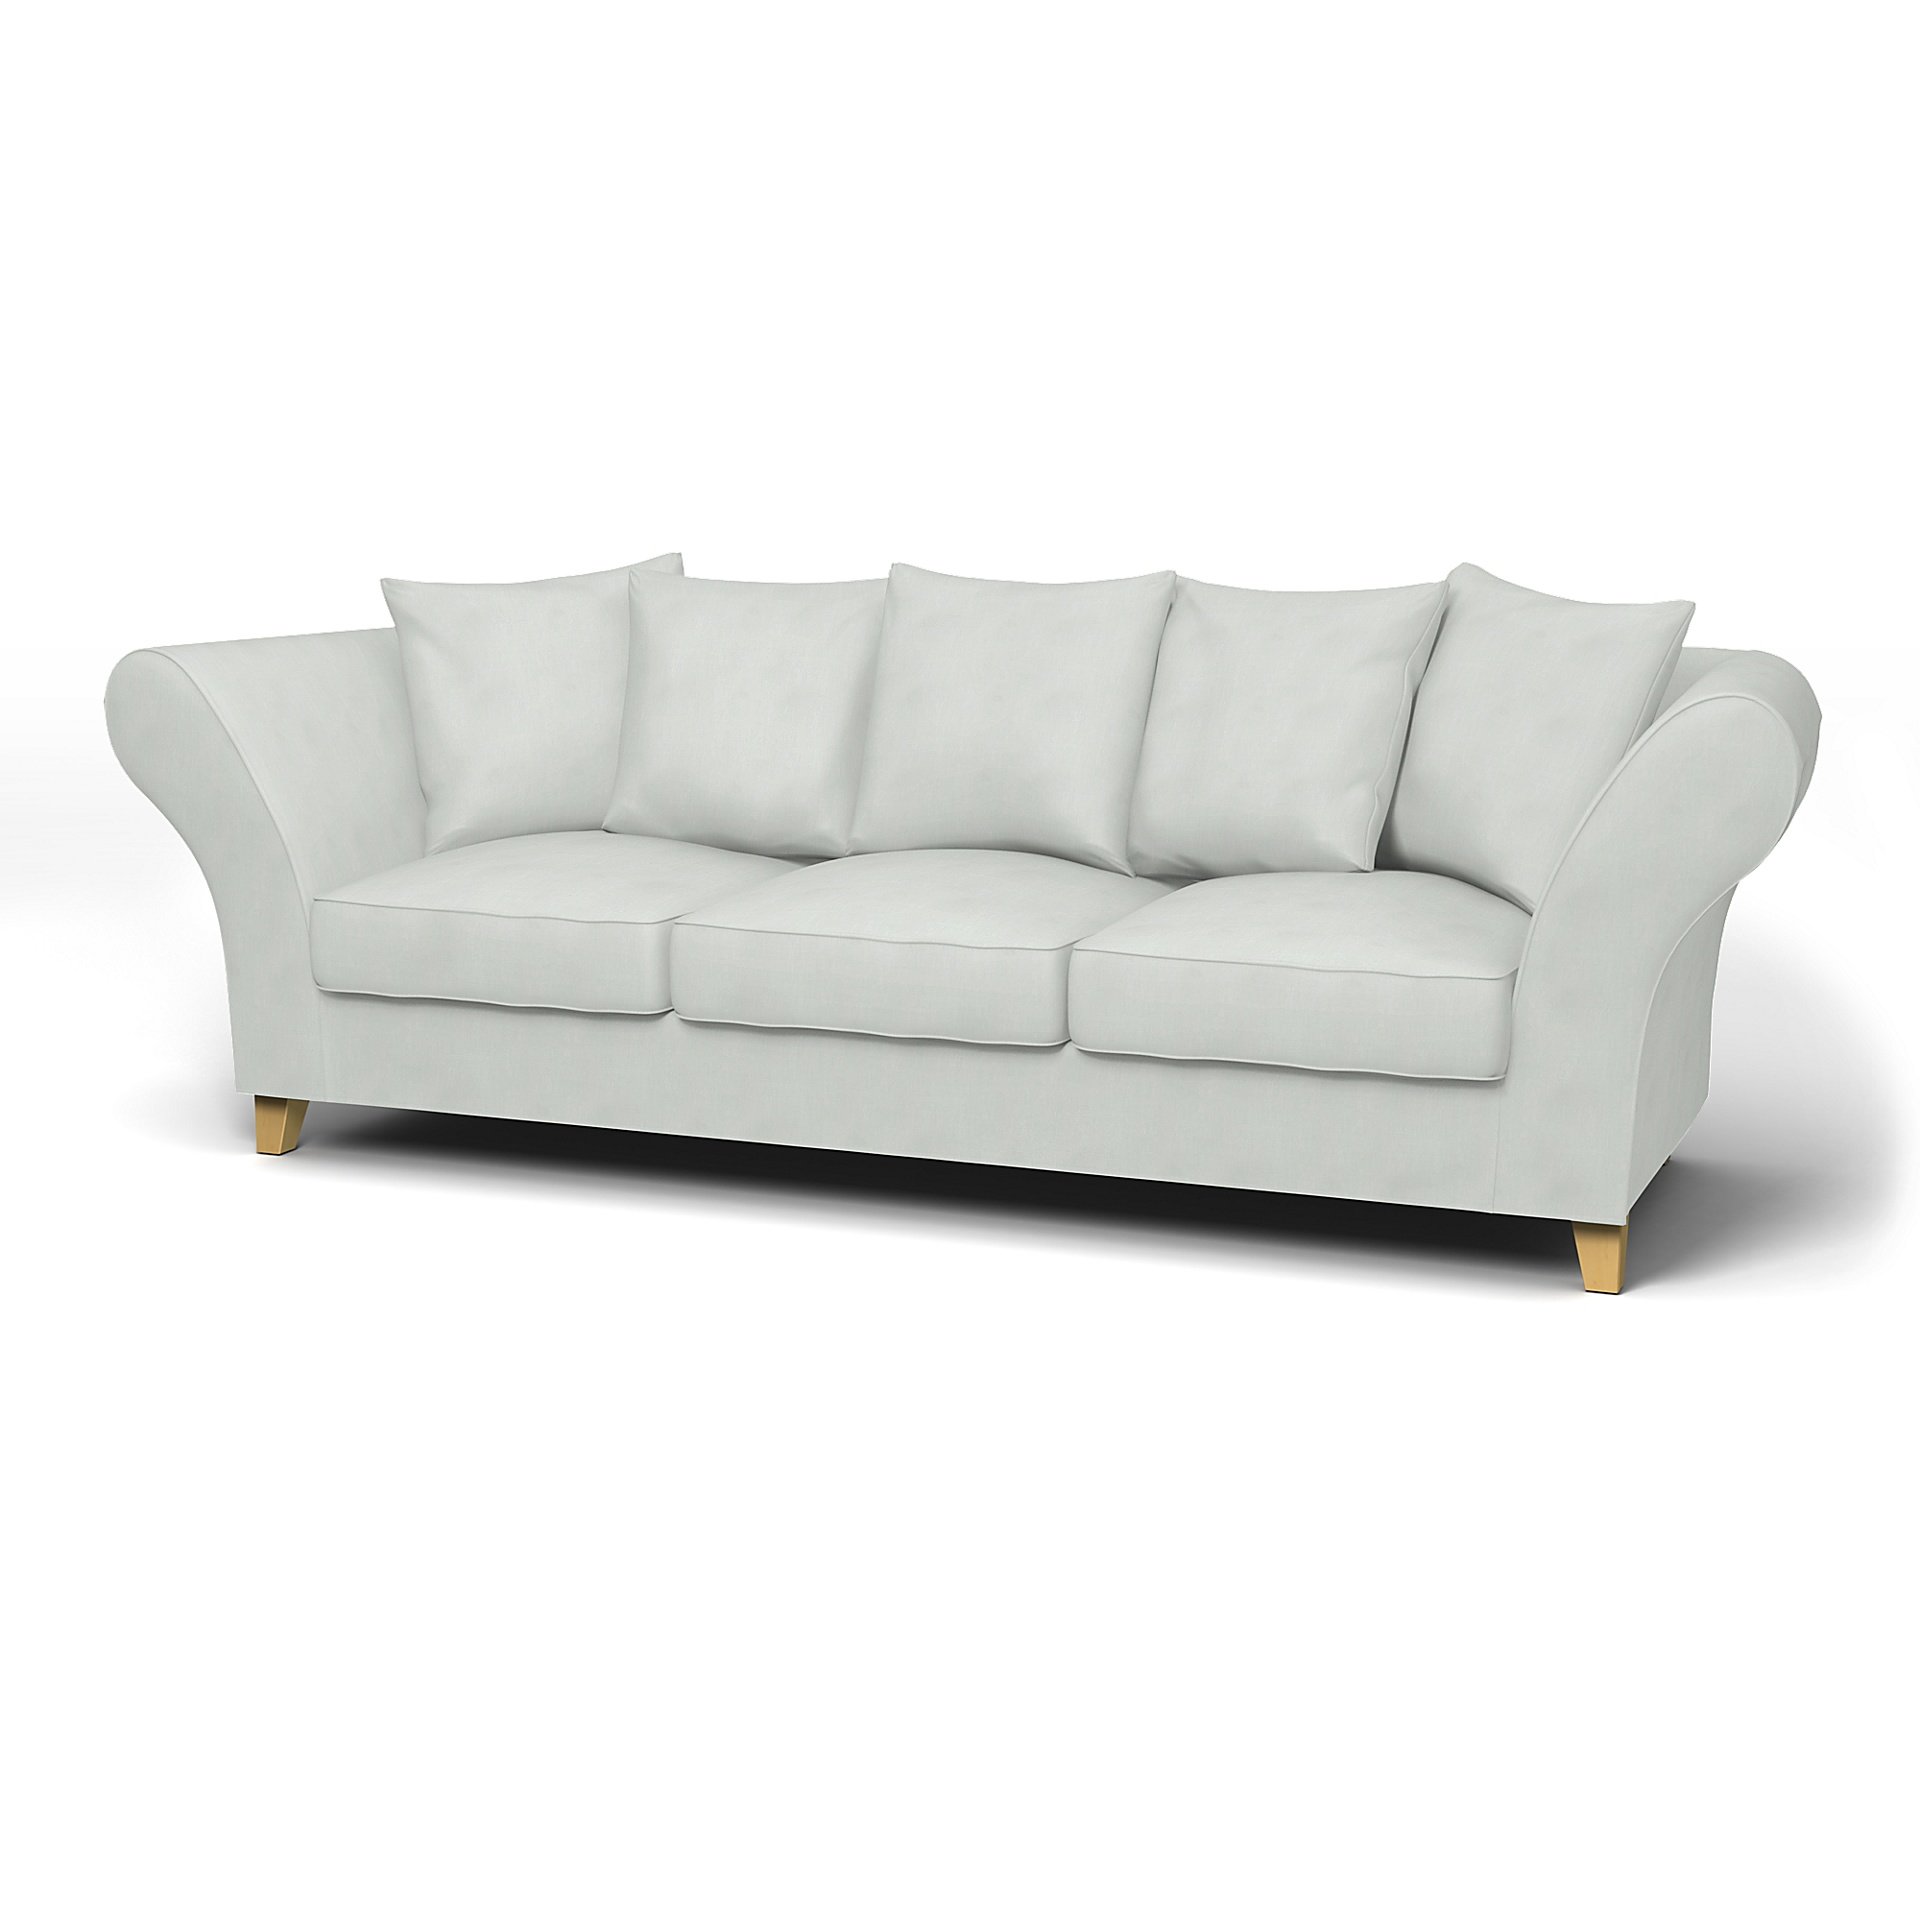 IKEA - Backa 3.5 Seater Sofa Cover, Silver Grey, Linen - Bemz